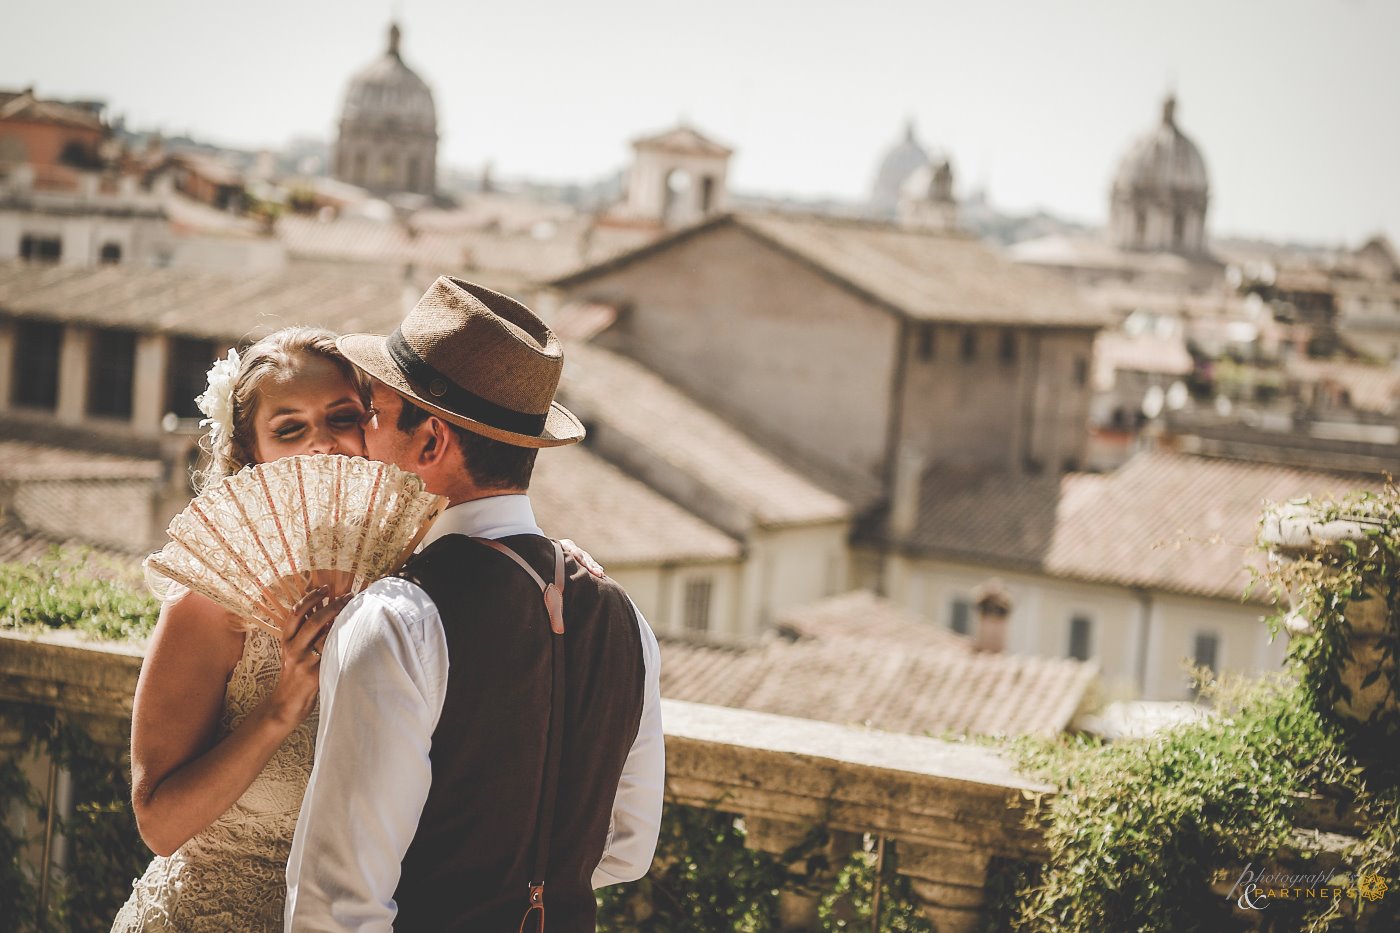 A kiss on a Roman terrace 🌞